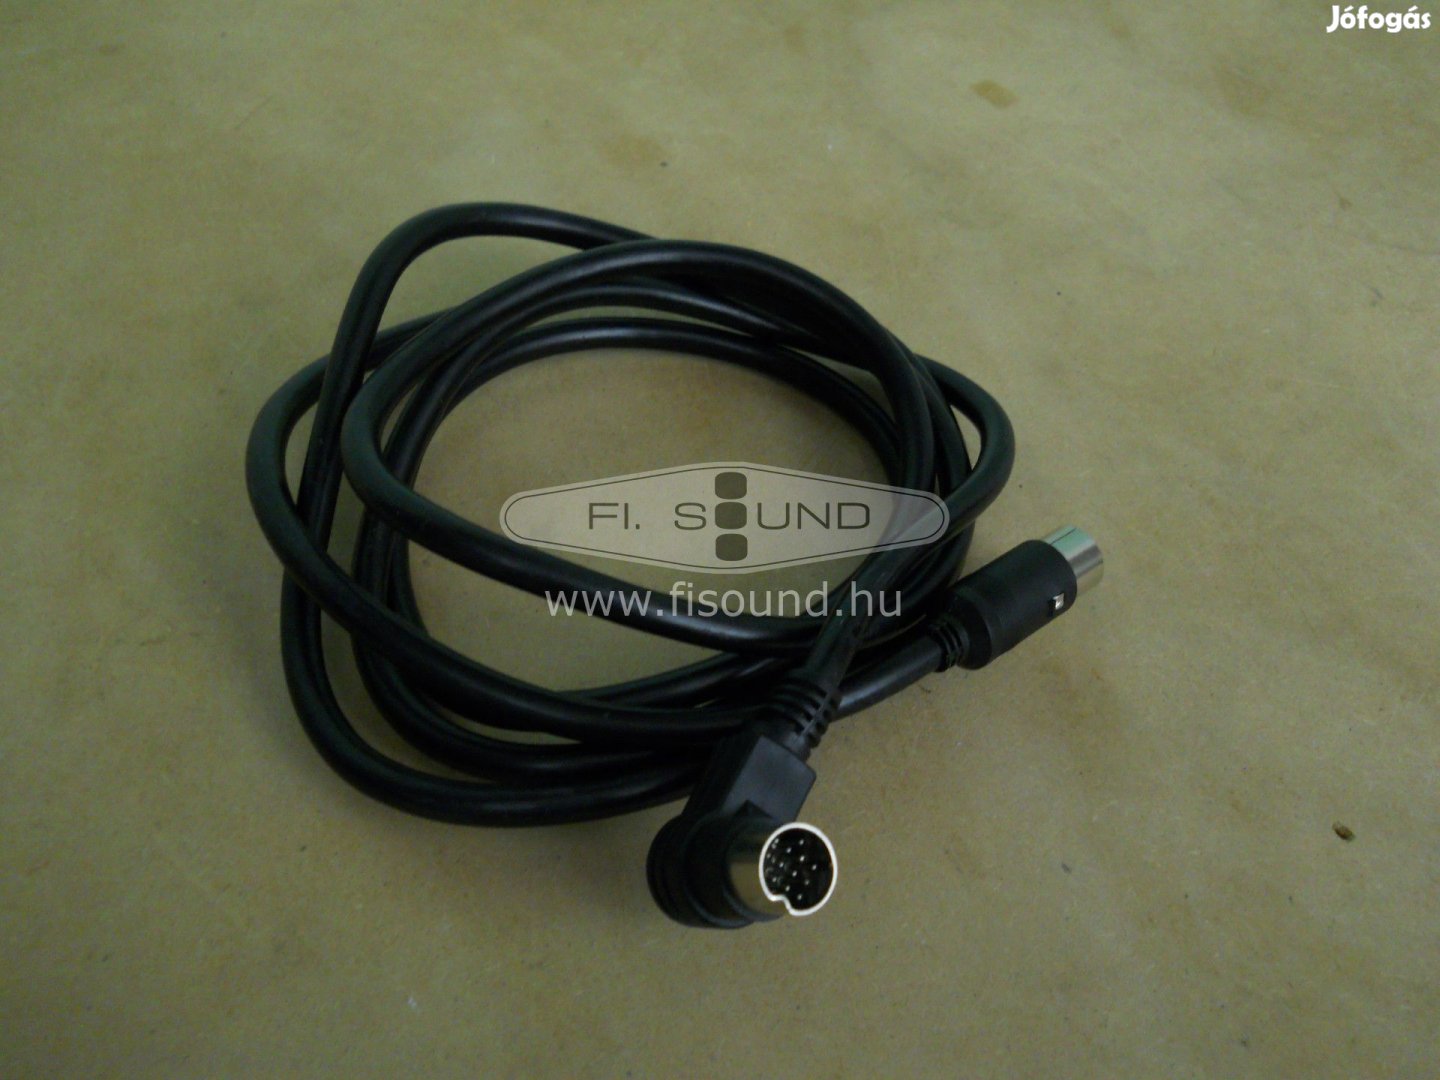 Teac-Kenwood-Magnat média rendszer összekötő kábel ,2 méteres